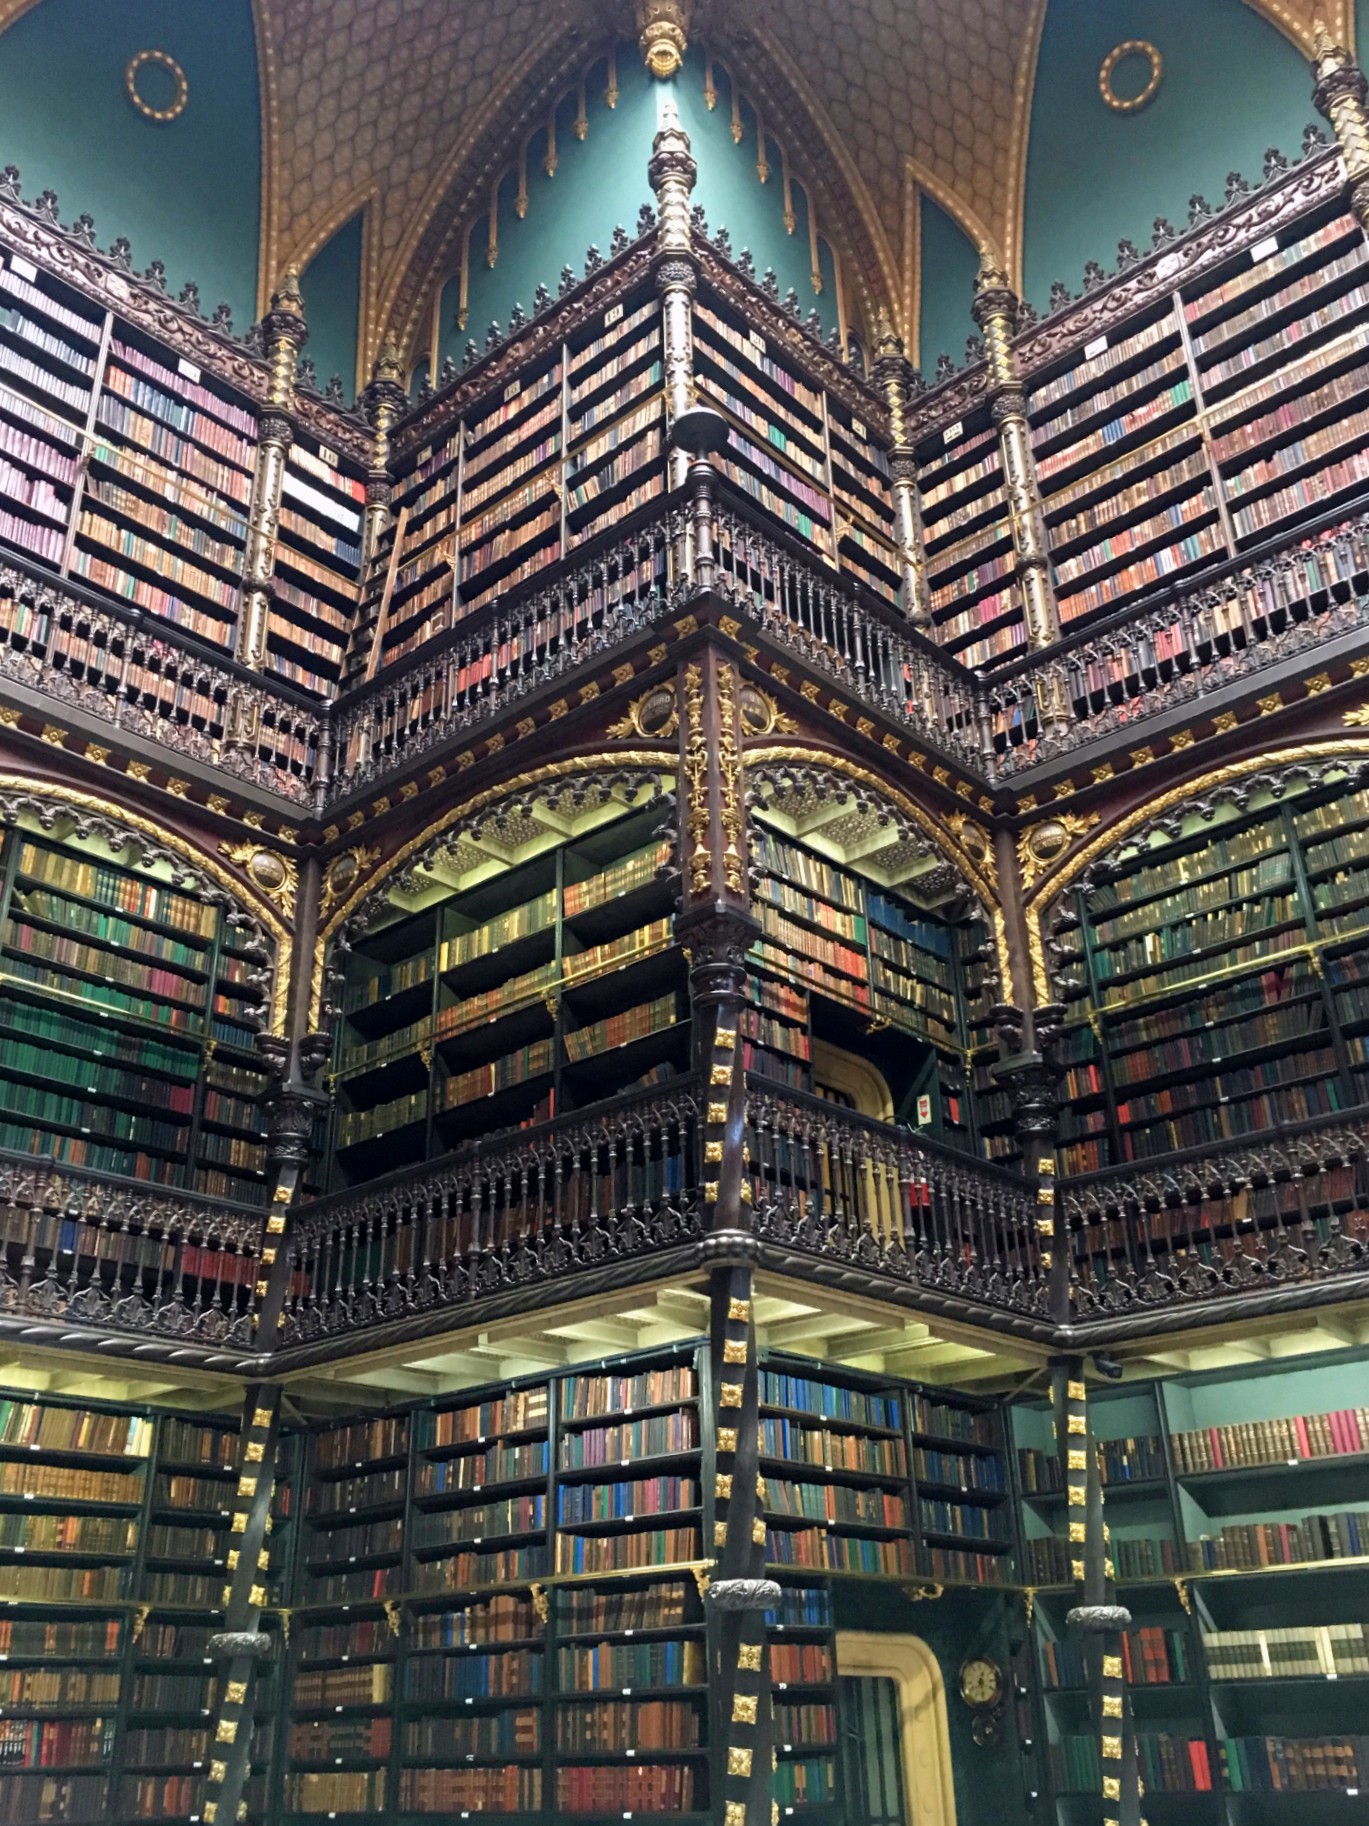 Inside the Royal Portugese Reading Room, Rio de Janeiro, Brazil